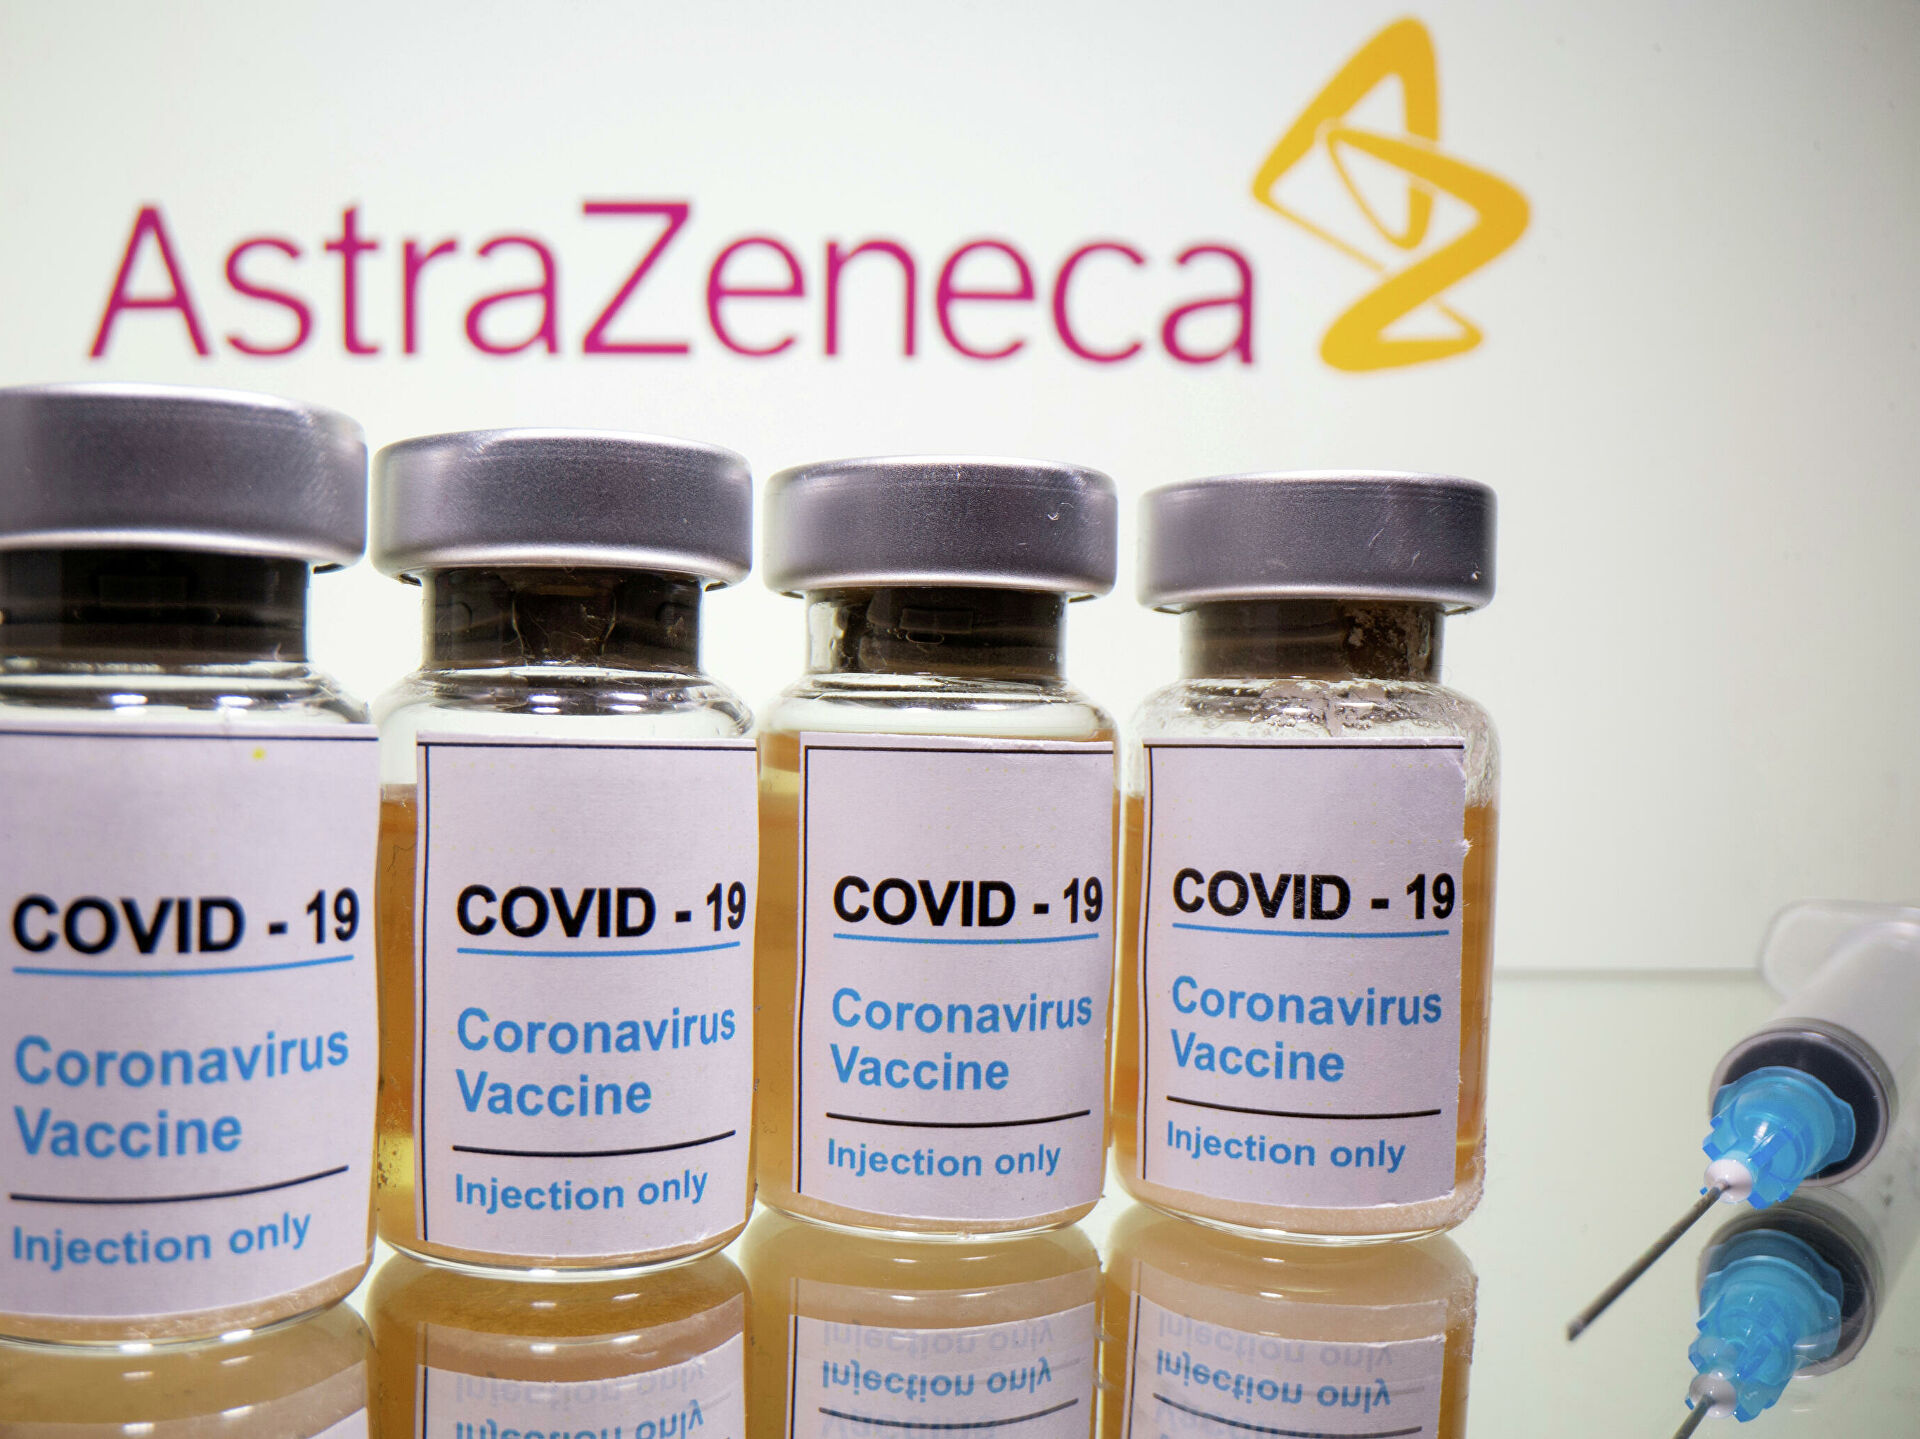 AstraZeneca могла предоставить устаревшие и неполные данные об испытаниях вакцины